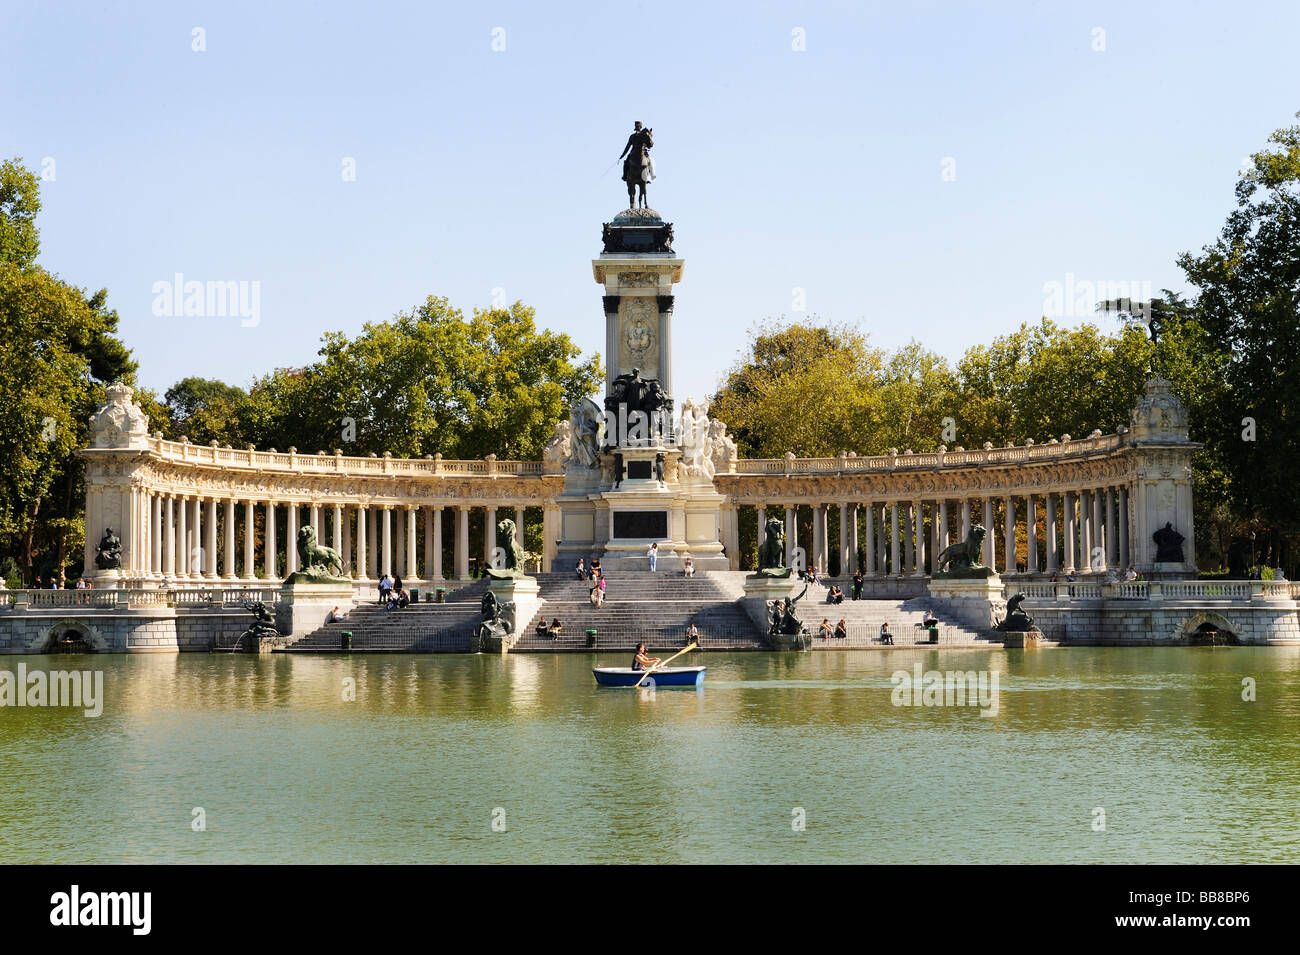 El Parque del Buen Retiro, Parque de la agradable retiro o el retiro con el monumento a Alfonso XII, Madrid, España Foto de stock